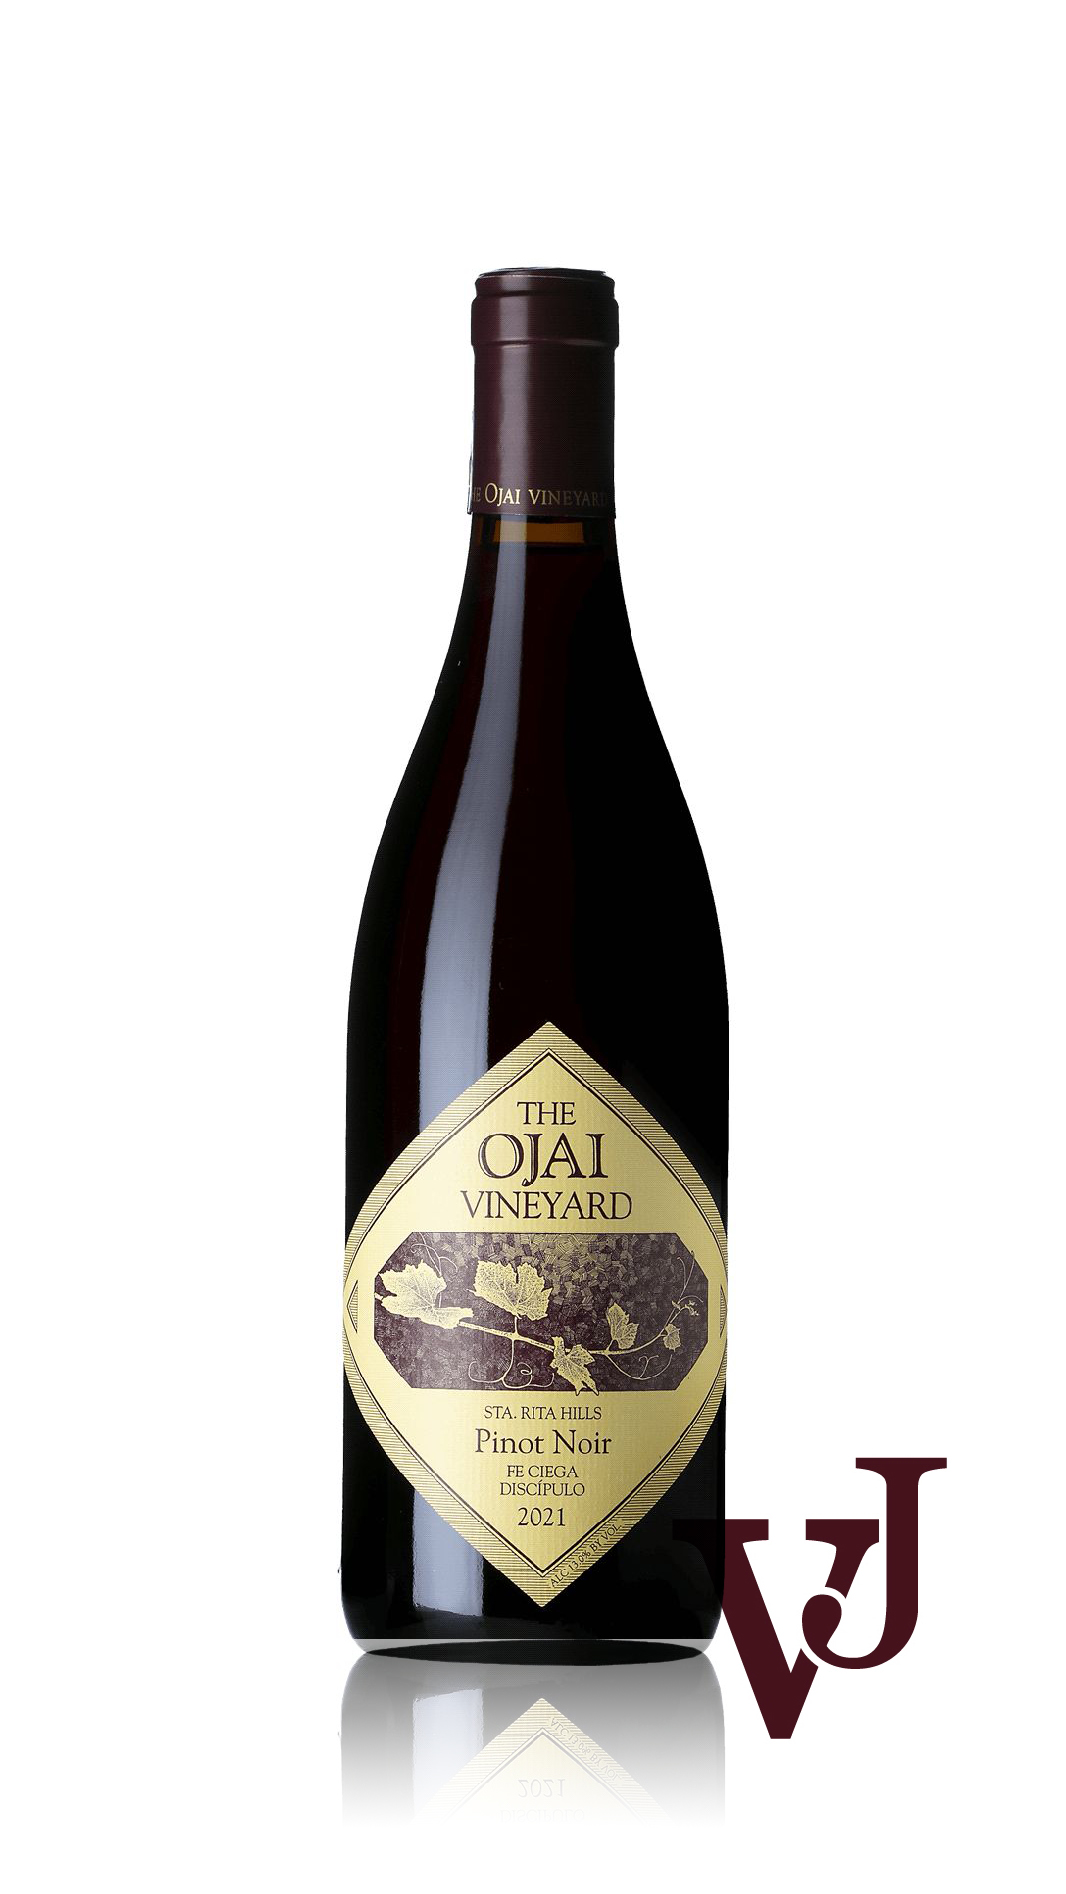 Rött Vin - Ojai Discipulo Pinot Noir 2021 artikel nummer 9055201 från producenten Ojai Vineyard från USA